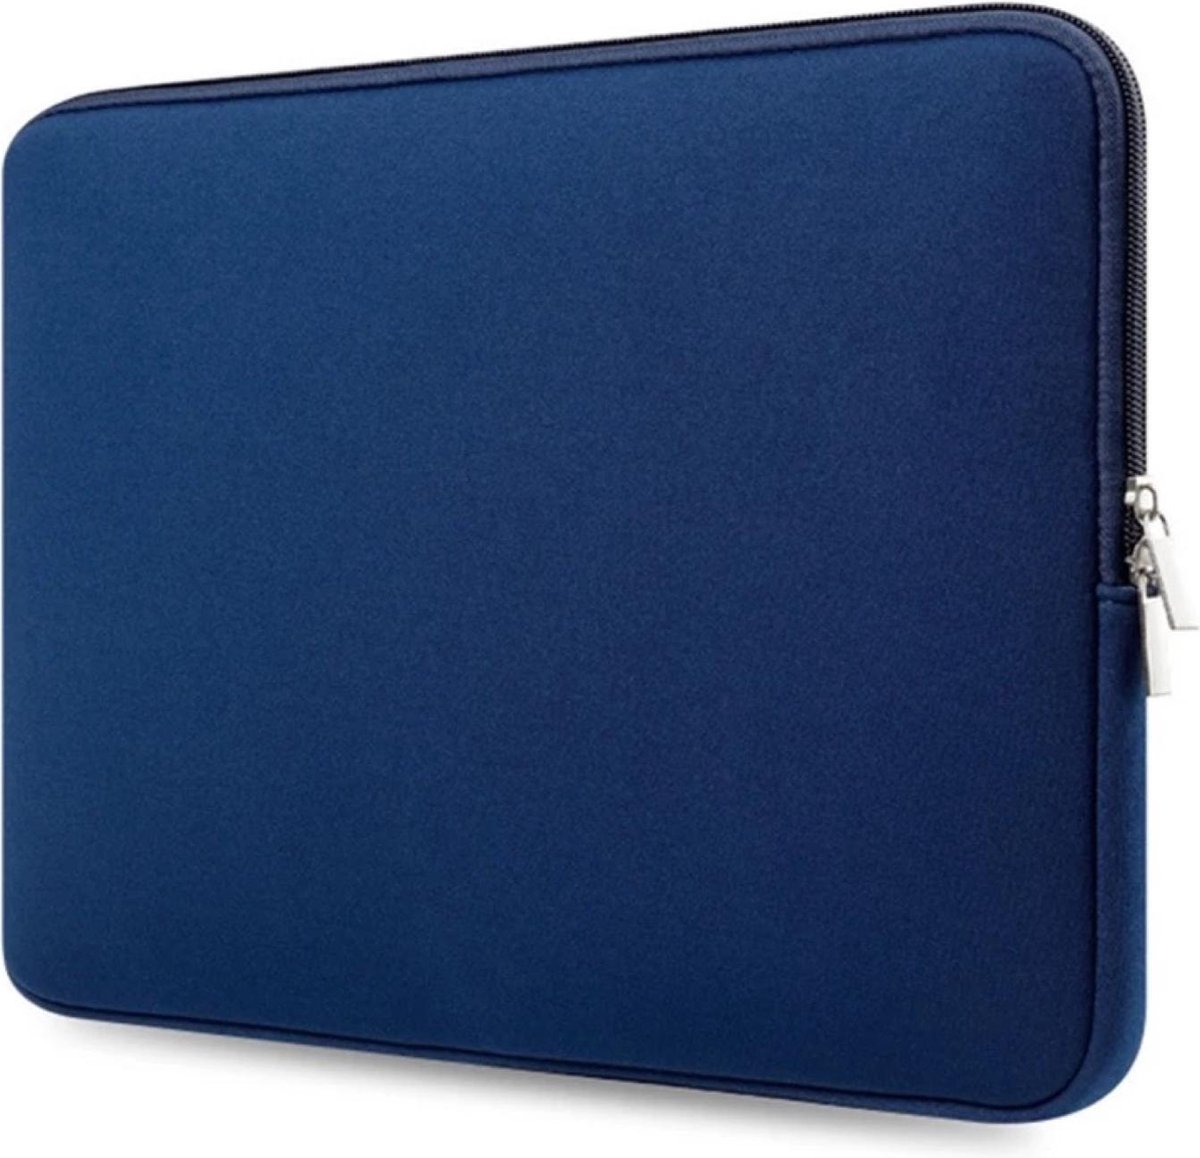 Spatwaterdichte laptopsleeve – 14,6 inch - dubbele ritssluiting- donker blauw - unisex - spatwaterbestending